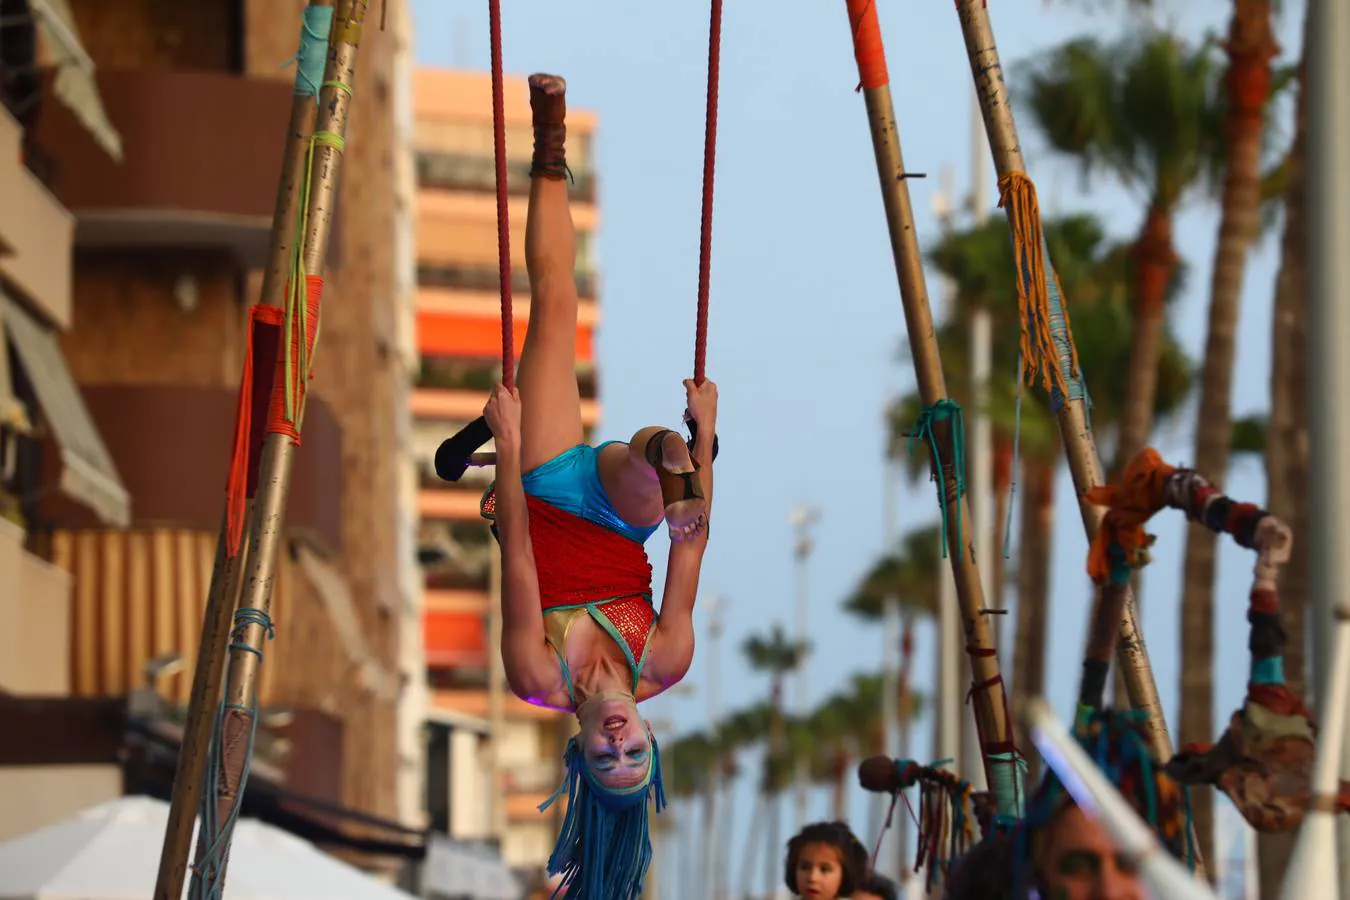 ¡Alehop! La gran fiesta del circo contemporáneo aterriza en Cádiz